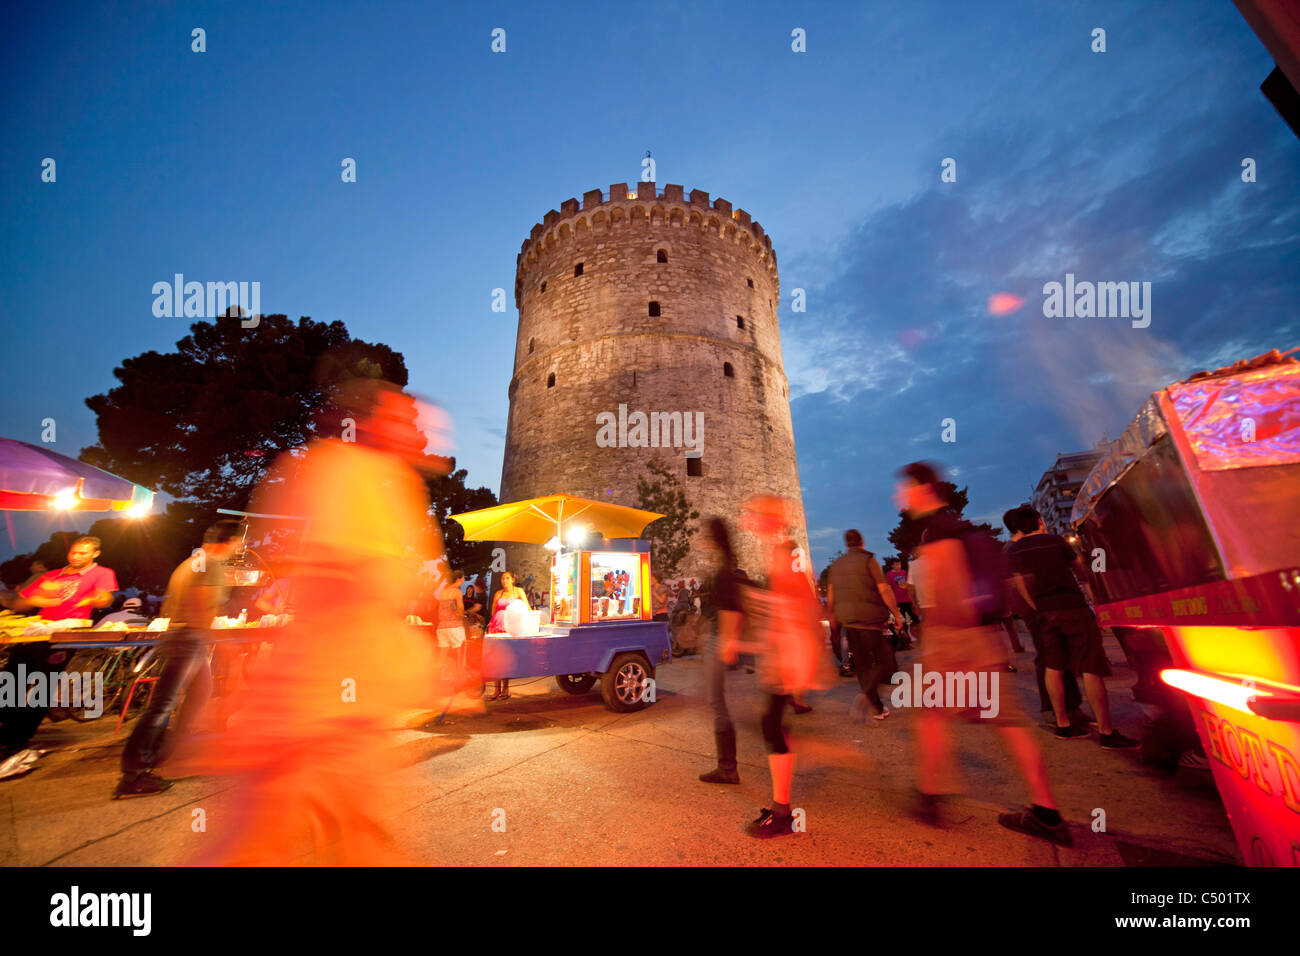 Une longue soirée à la tour blanche lumineuse, symbole de la ville de Thessalonique, Macédoine, Grèce Banque D'Images